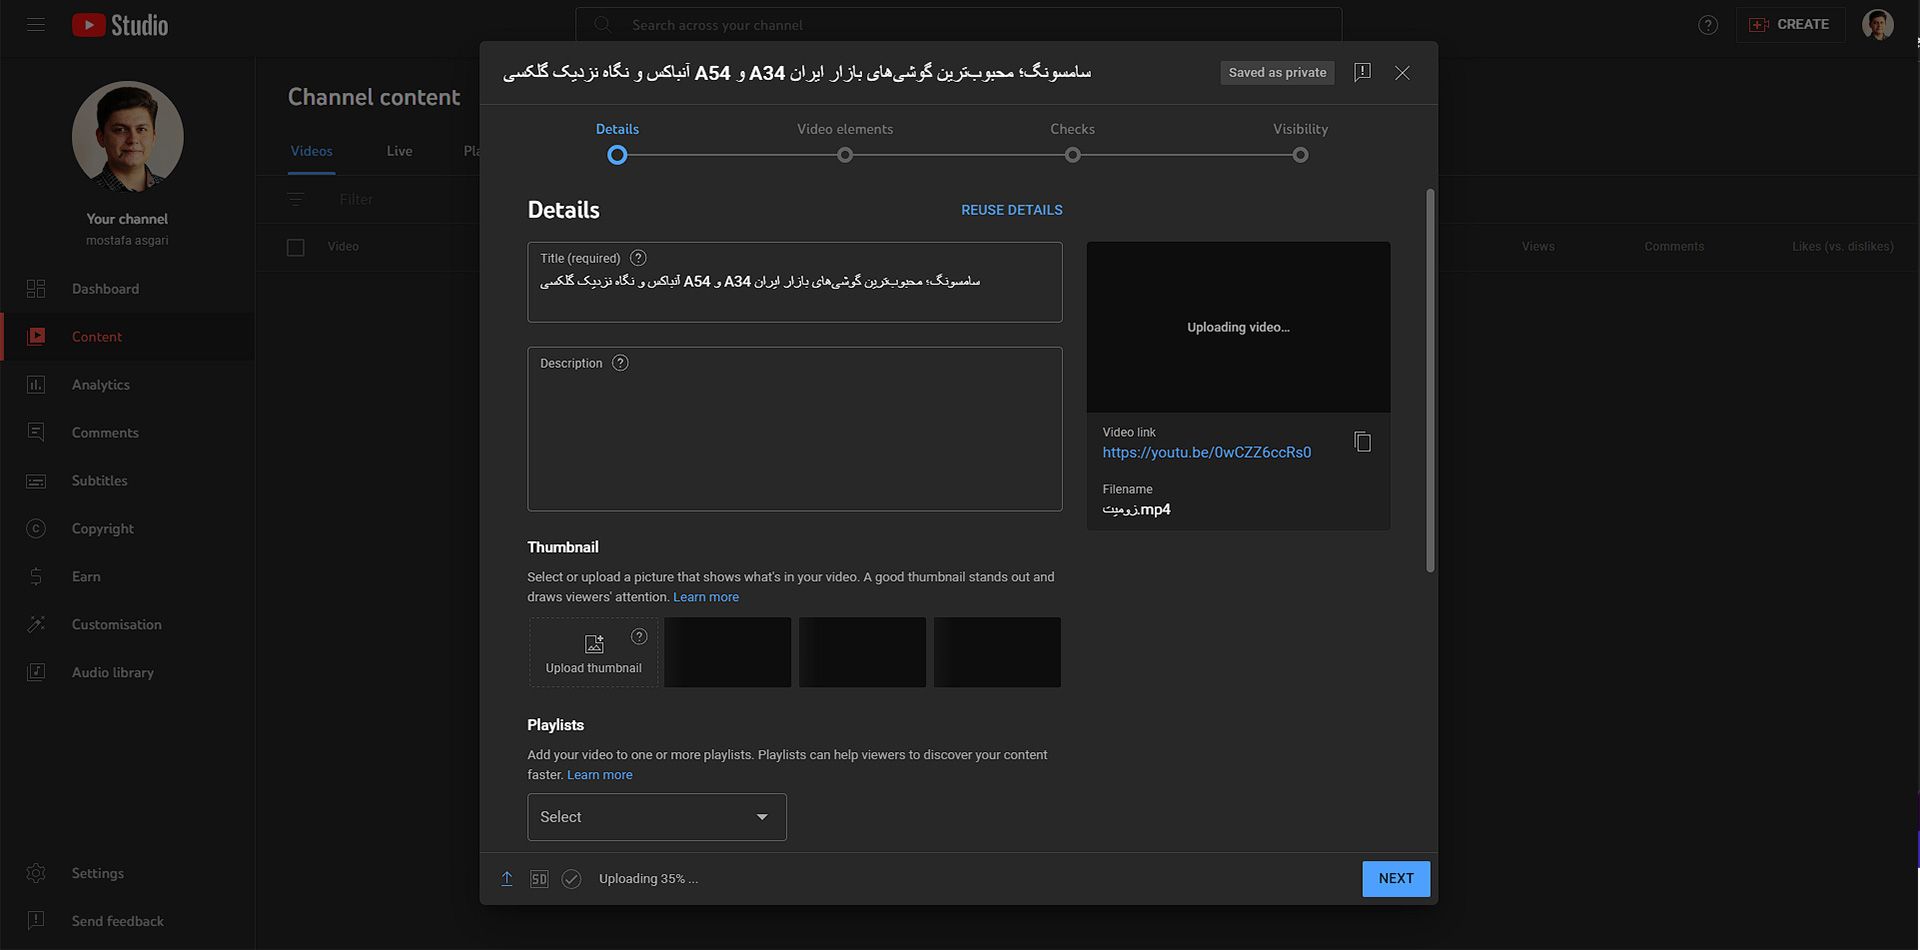 نوشتن تیتر و توضیحات در تنظیمات ویدئو هنگام آپلود در یوتیوب